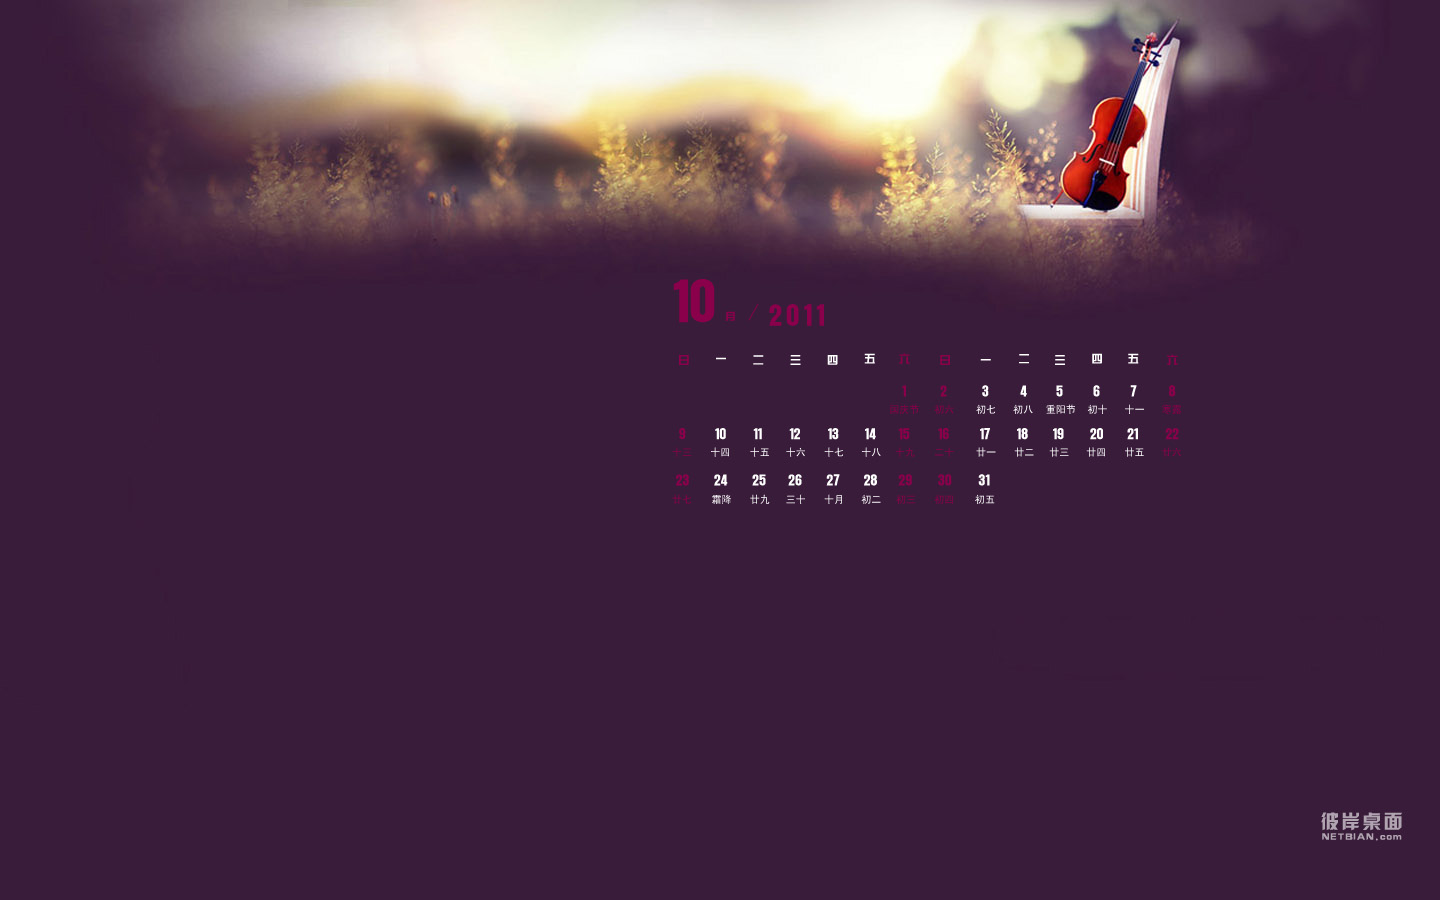 Morning Violin October 2011 Calendar Wallpaper